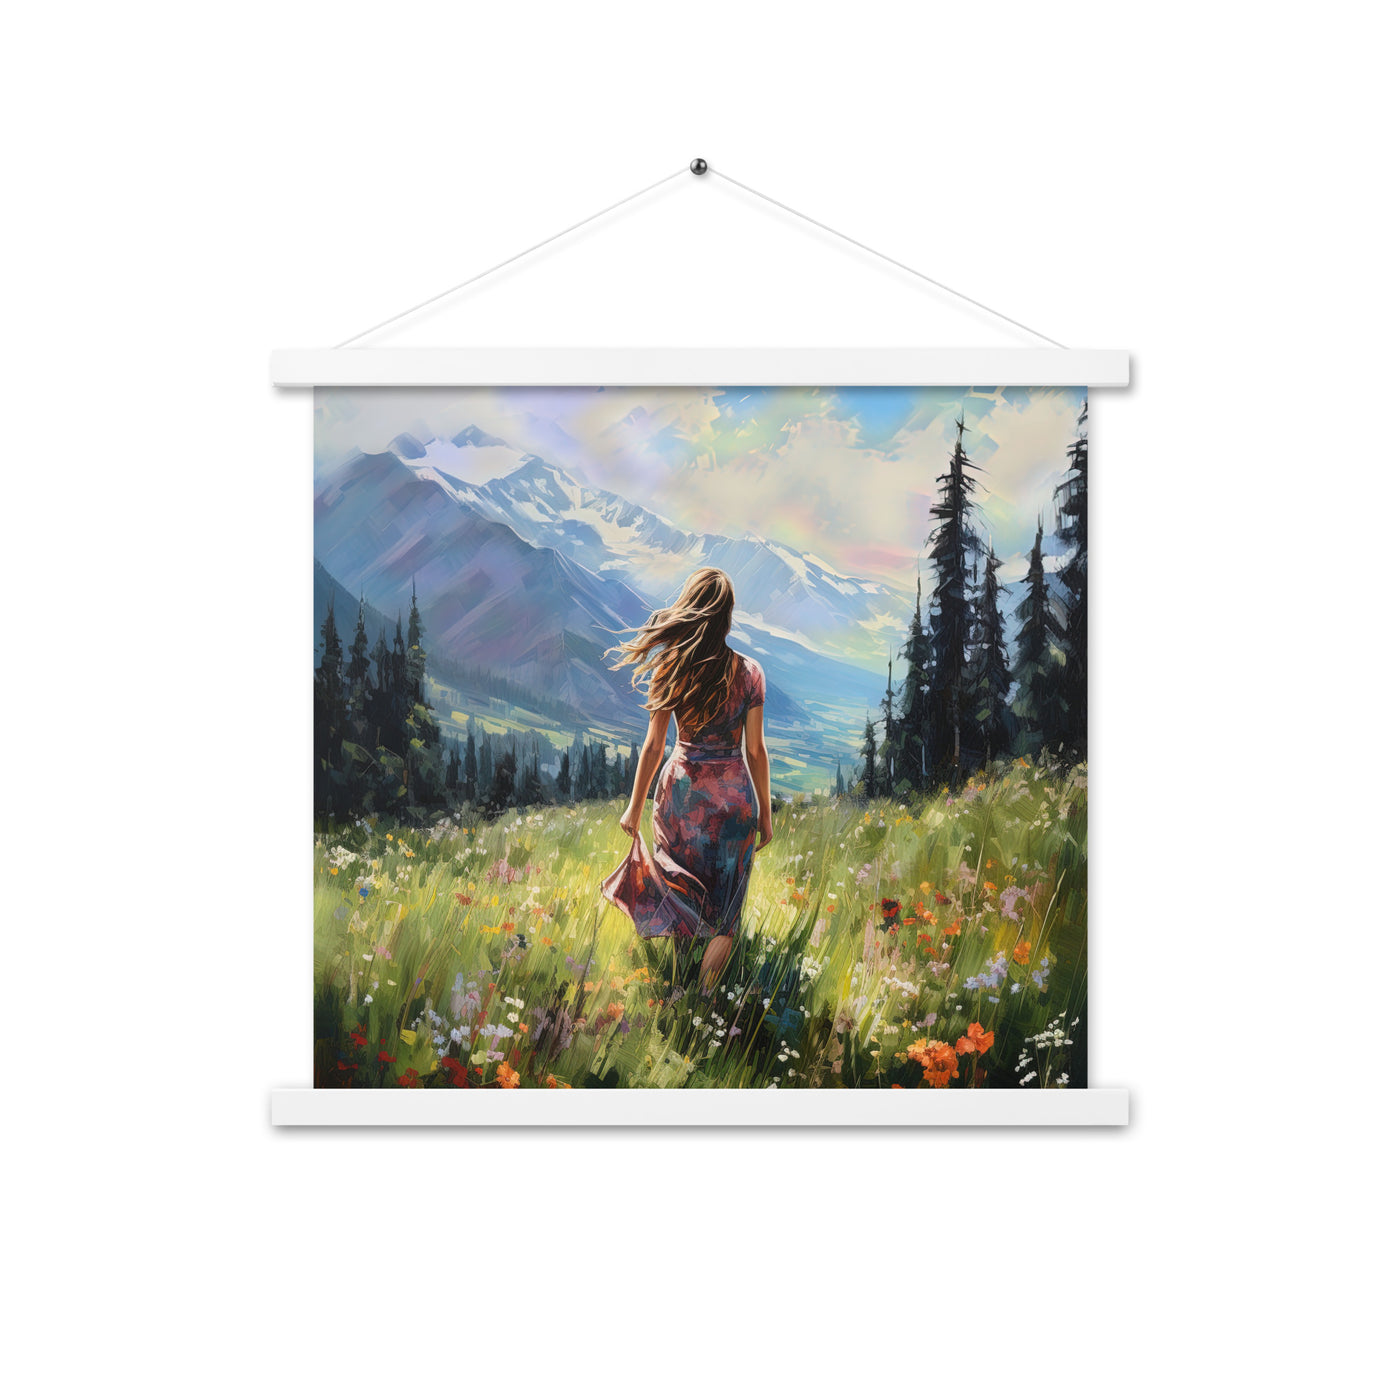 Frau mit langen Kleid im Feld mit Blumen - Berge im Hintergrund - Malerei - Premium Poster mit Aufhängung berge xxx 45.7 x 45.7 cm